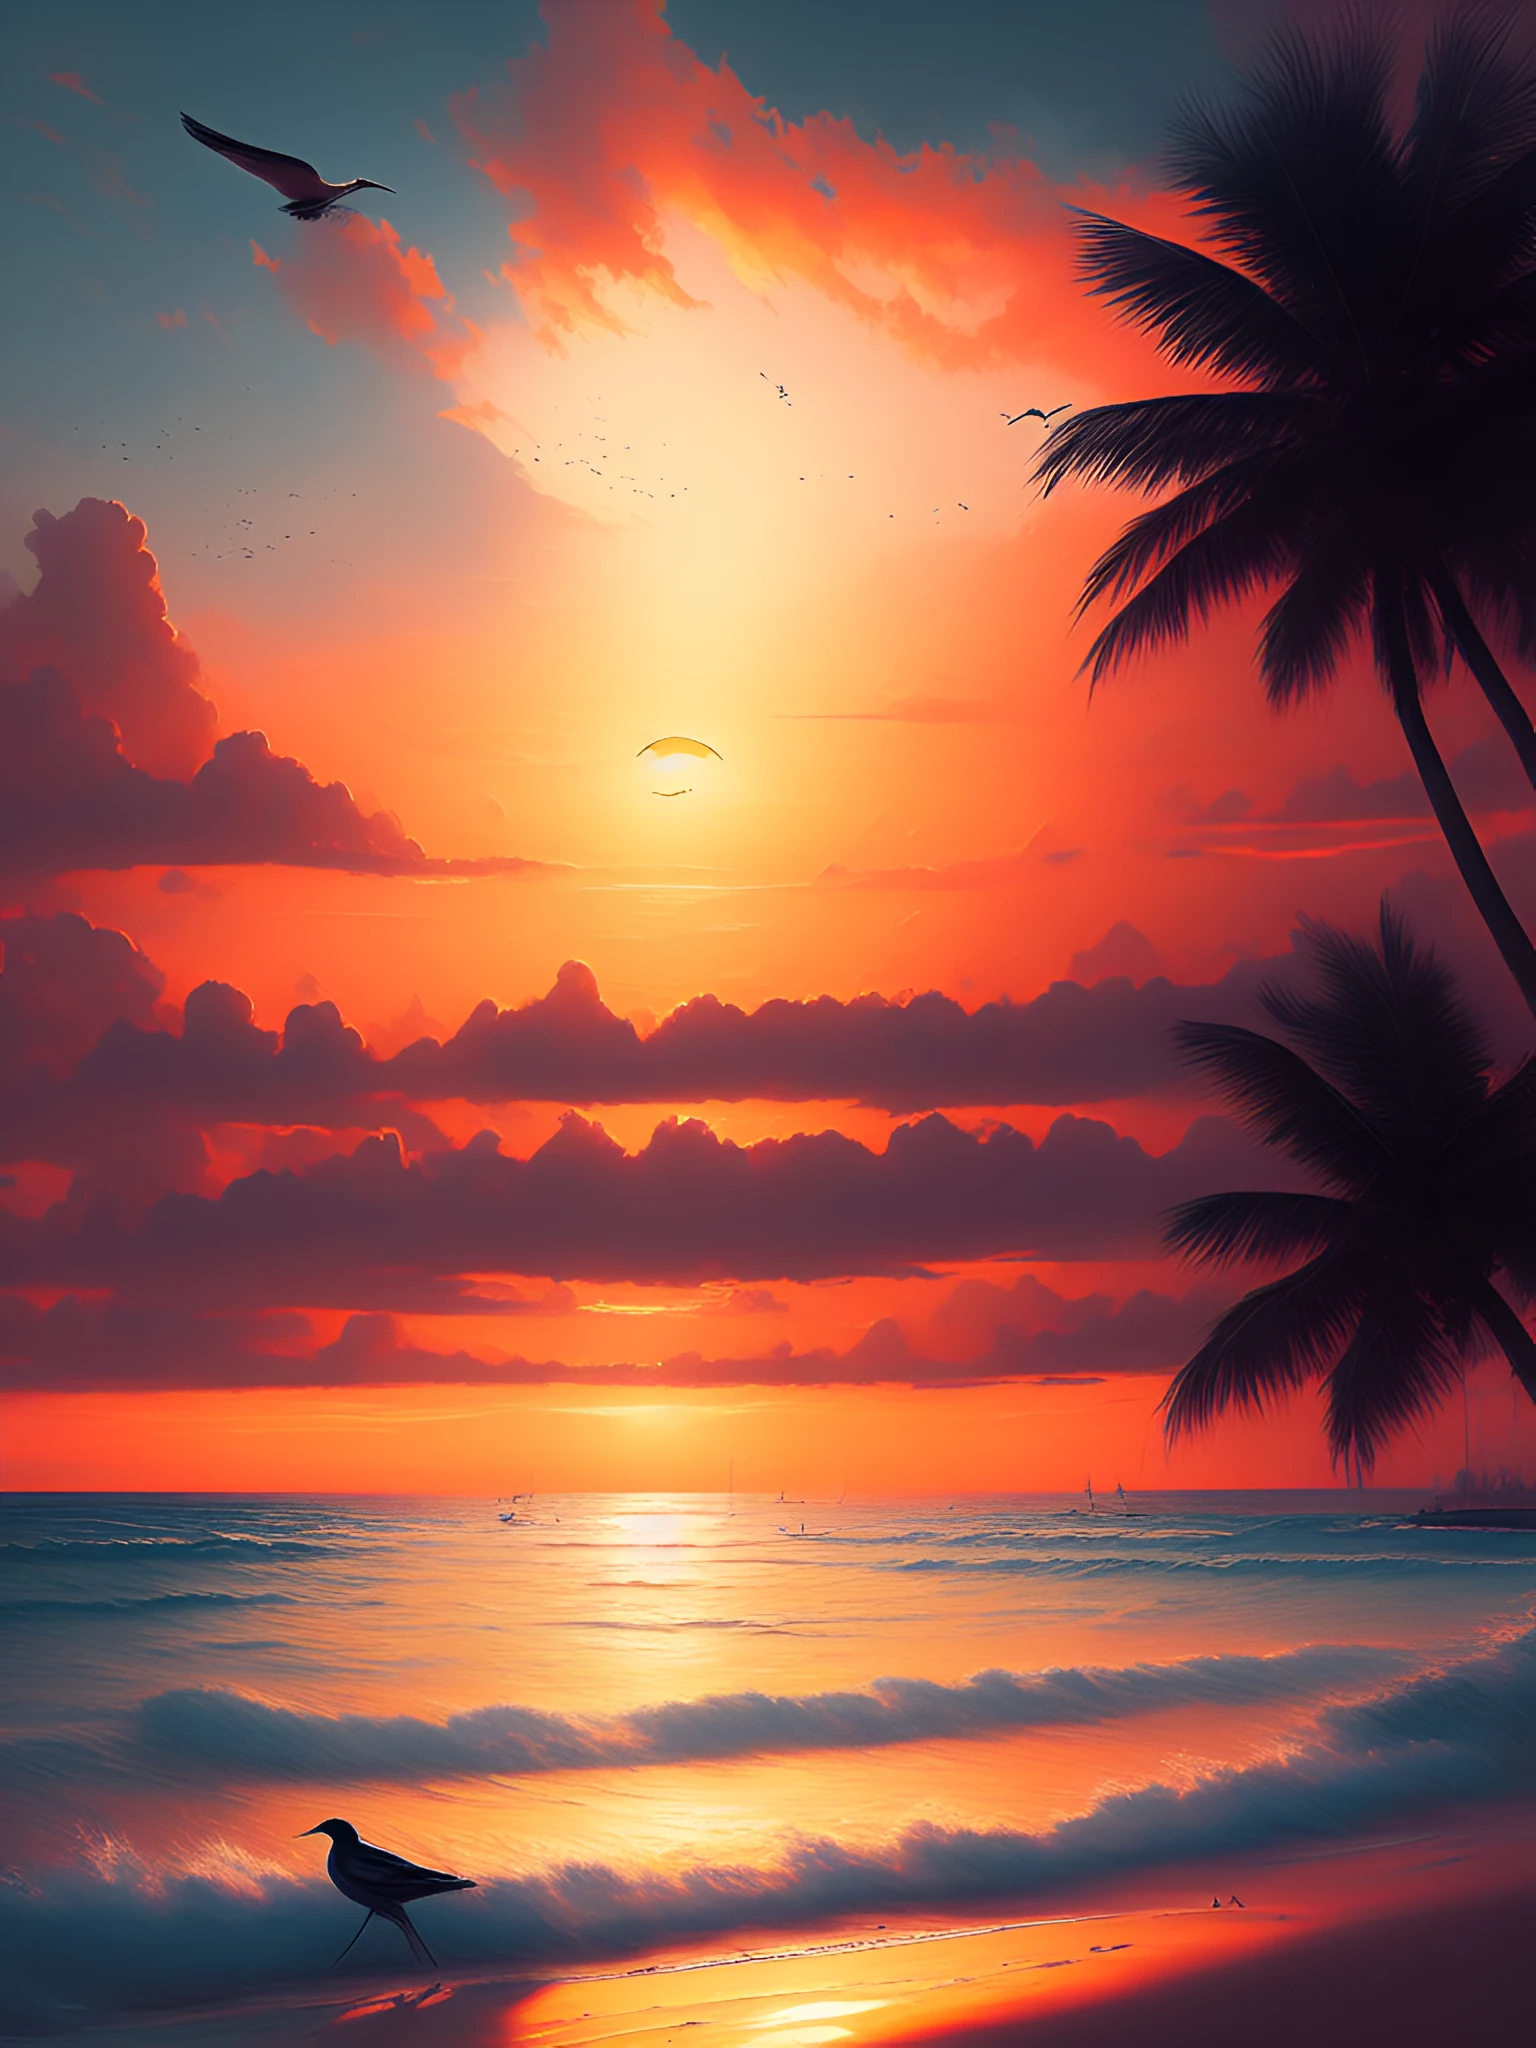 dreamlikeart una pintura de una hermosa playa paradisíaca al atardecer, sol en el medio, pájaro lejano volando en el horizonte, tendencia en artstation al estilo de Greg Rutkowski